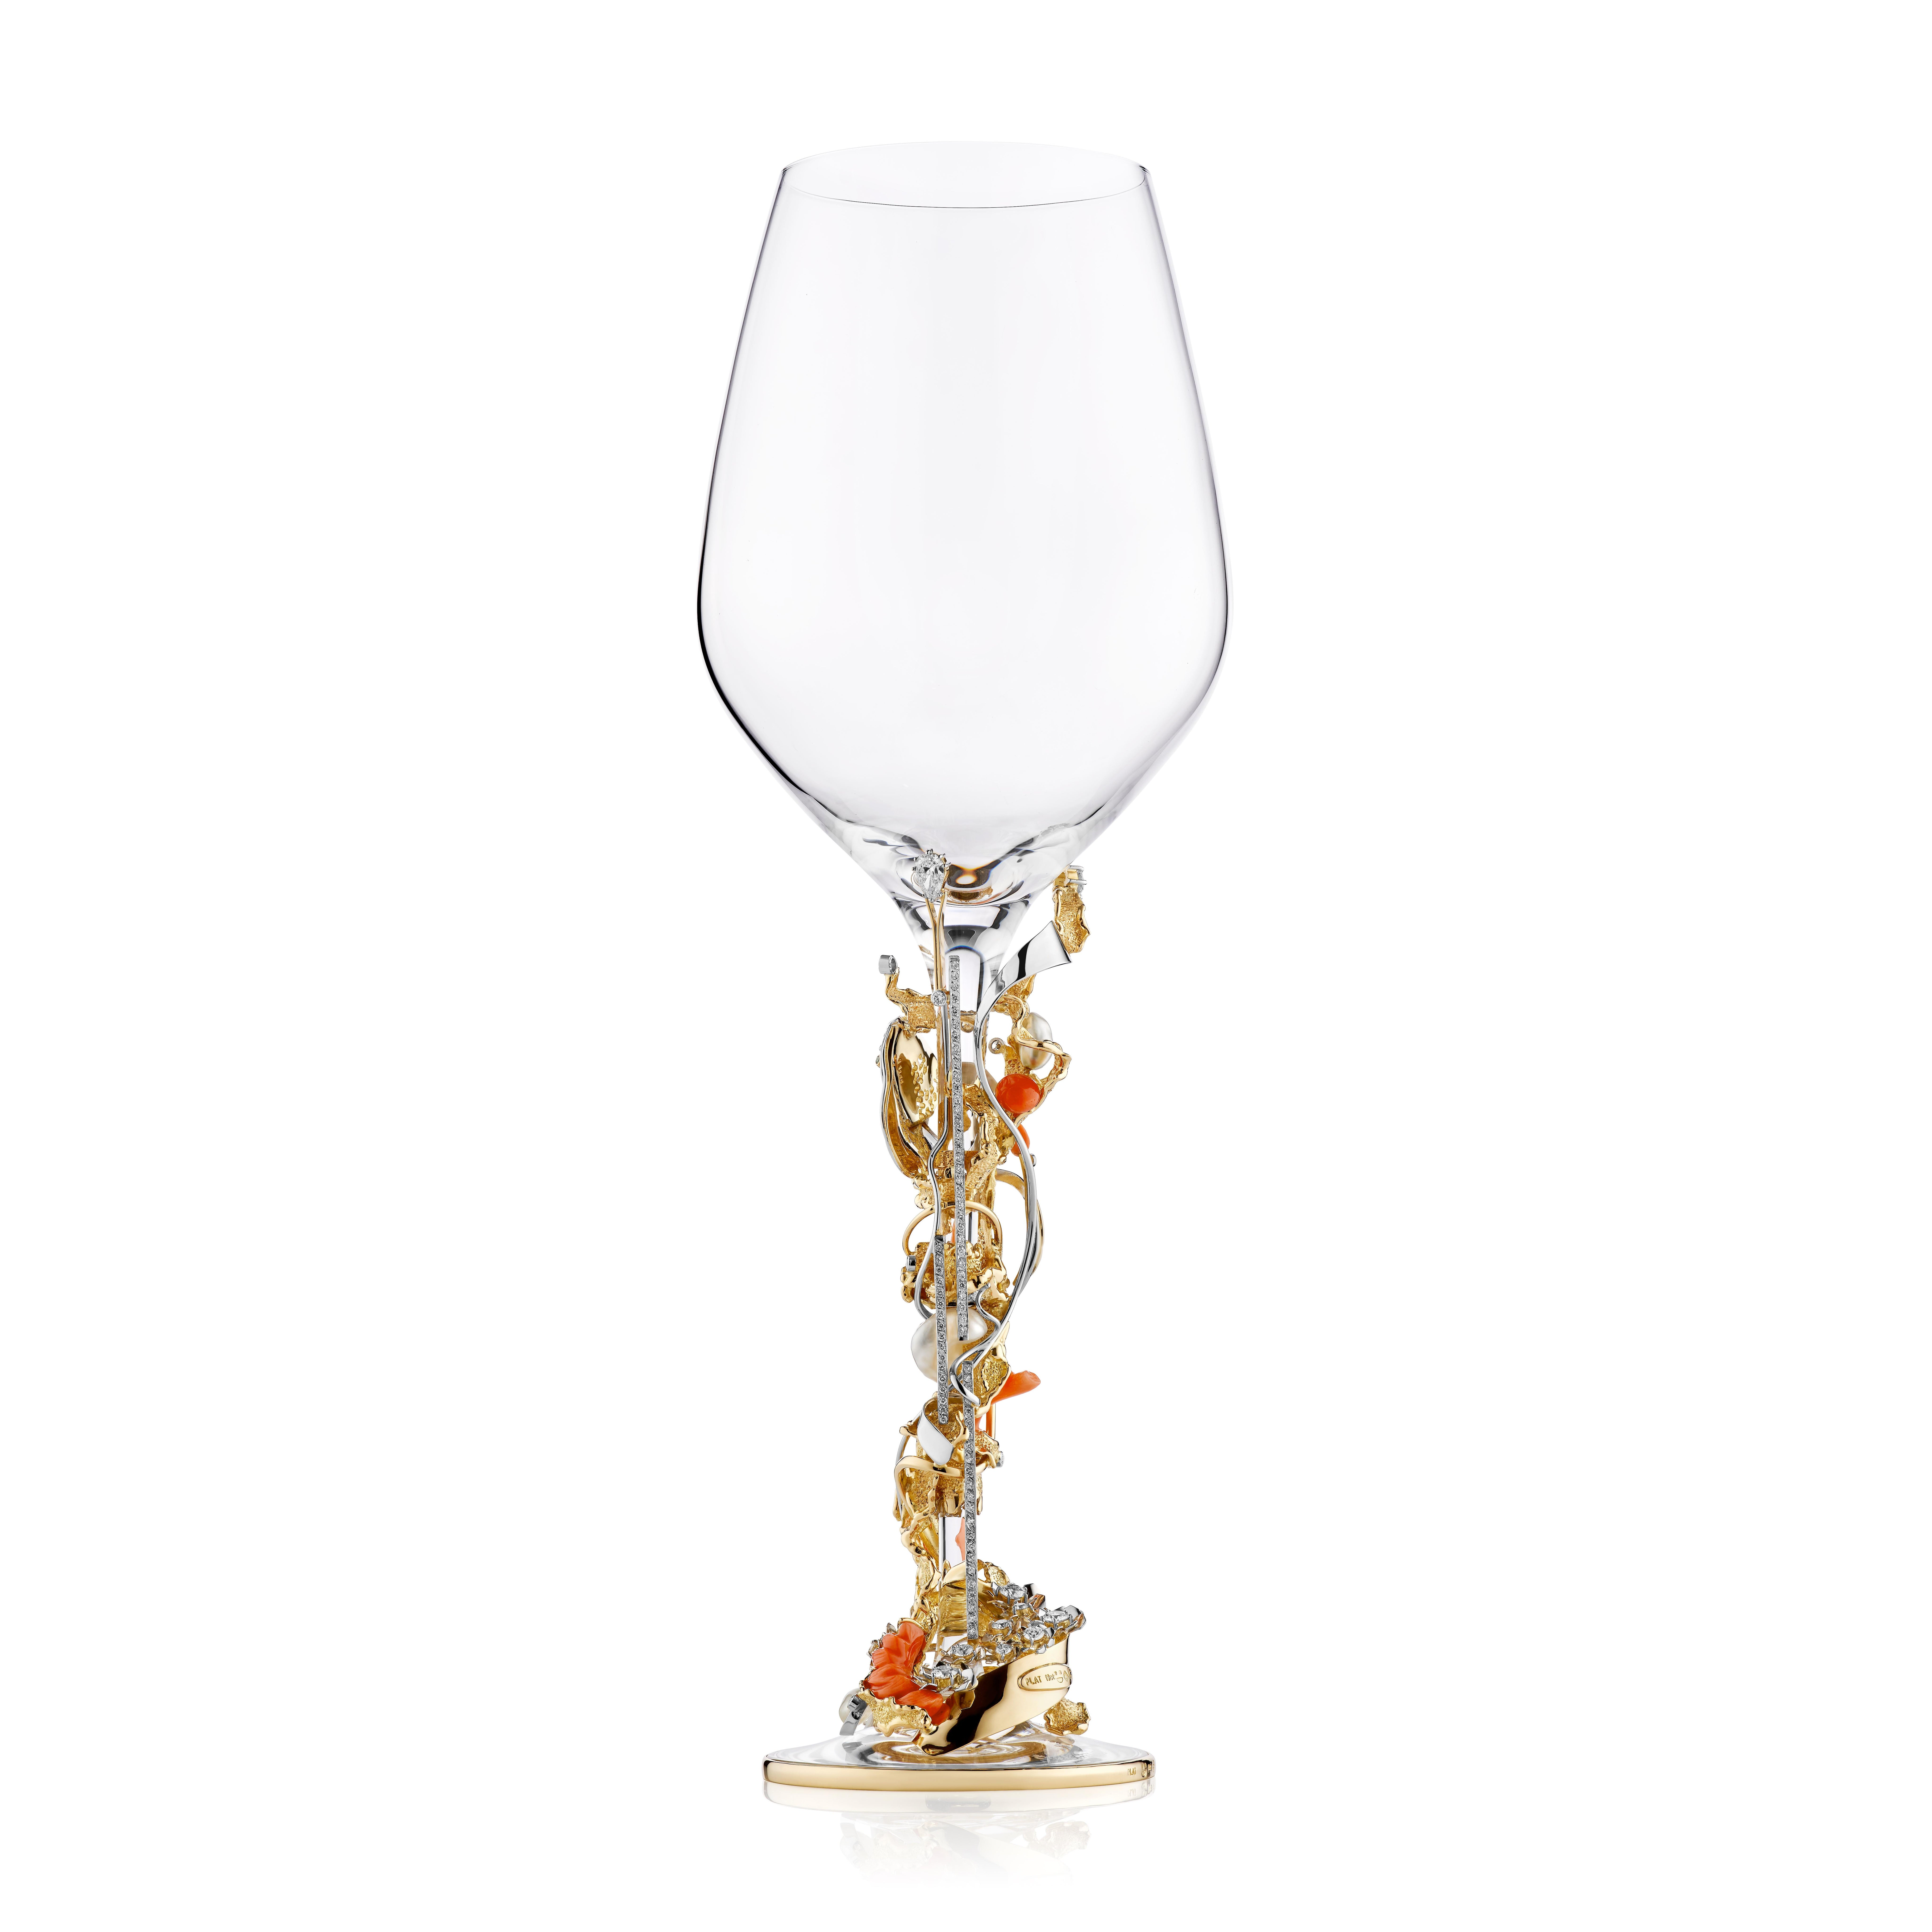 Taille ronde Vaisselle à pied Paul Amey 18 carats « Oceana » pour le vin rouge et/ou le champagne, fabriquée à la main par un artisan en vente